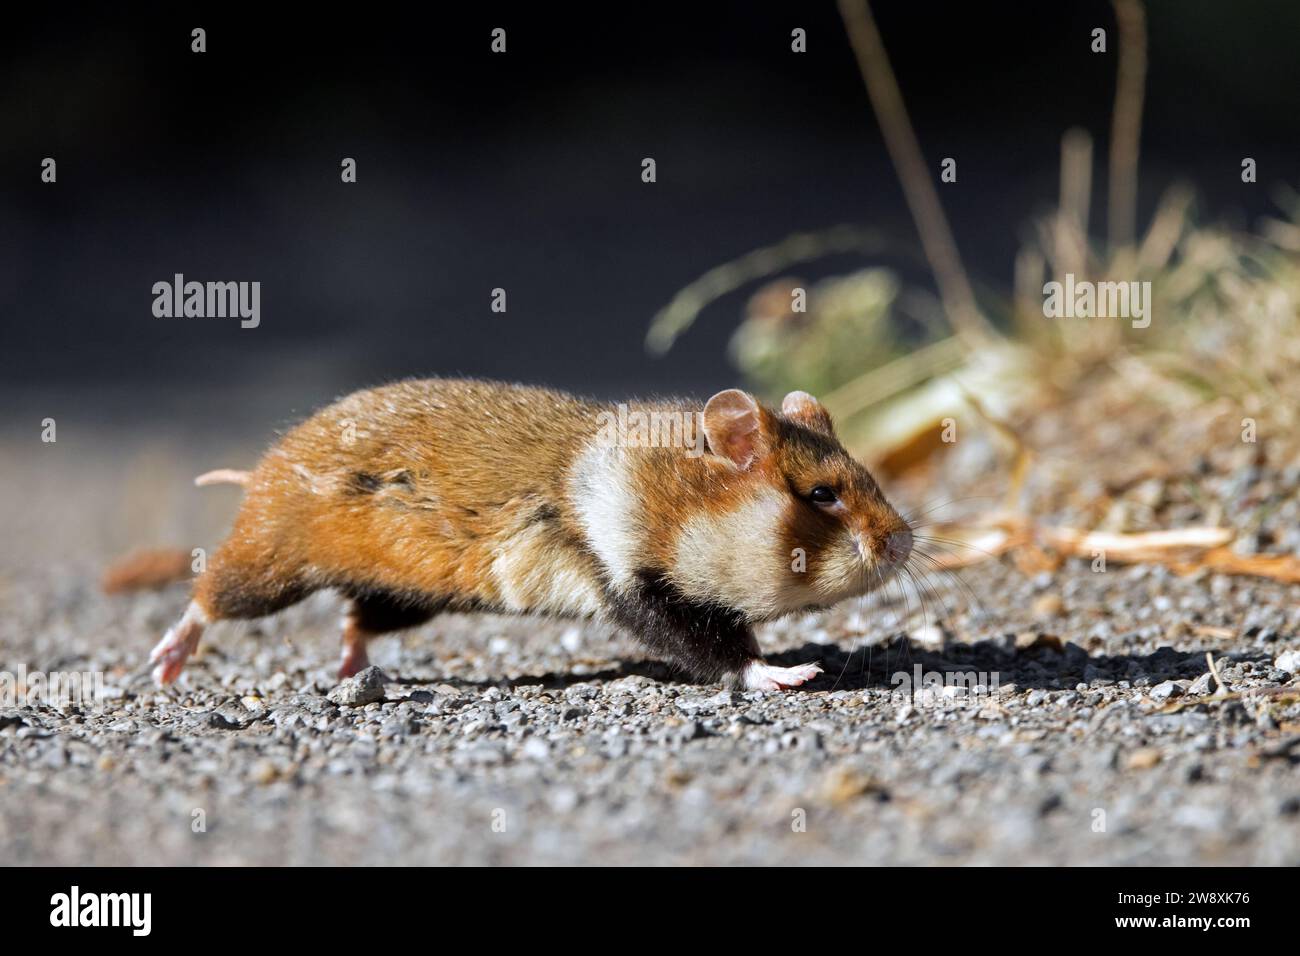 Hamster européen / hamster eurasien / hamster à ventre noir / hamster commun (Cricetus cricetus) chemin de circulation et de traversée / route à la campagne Banque D'Images